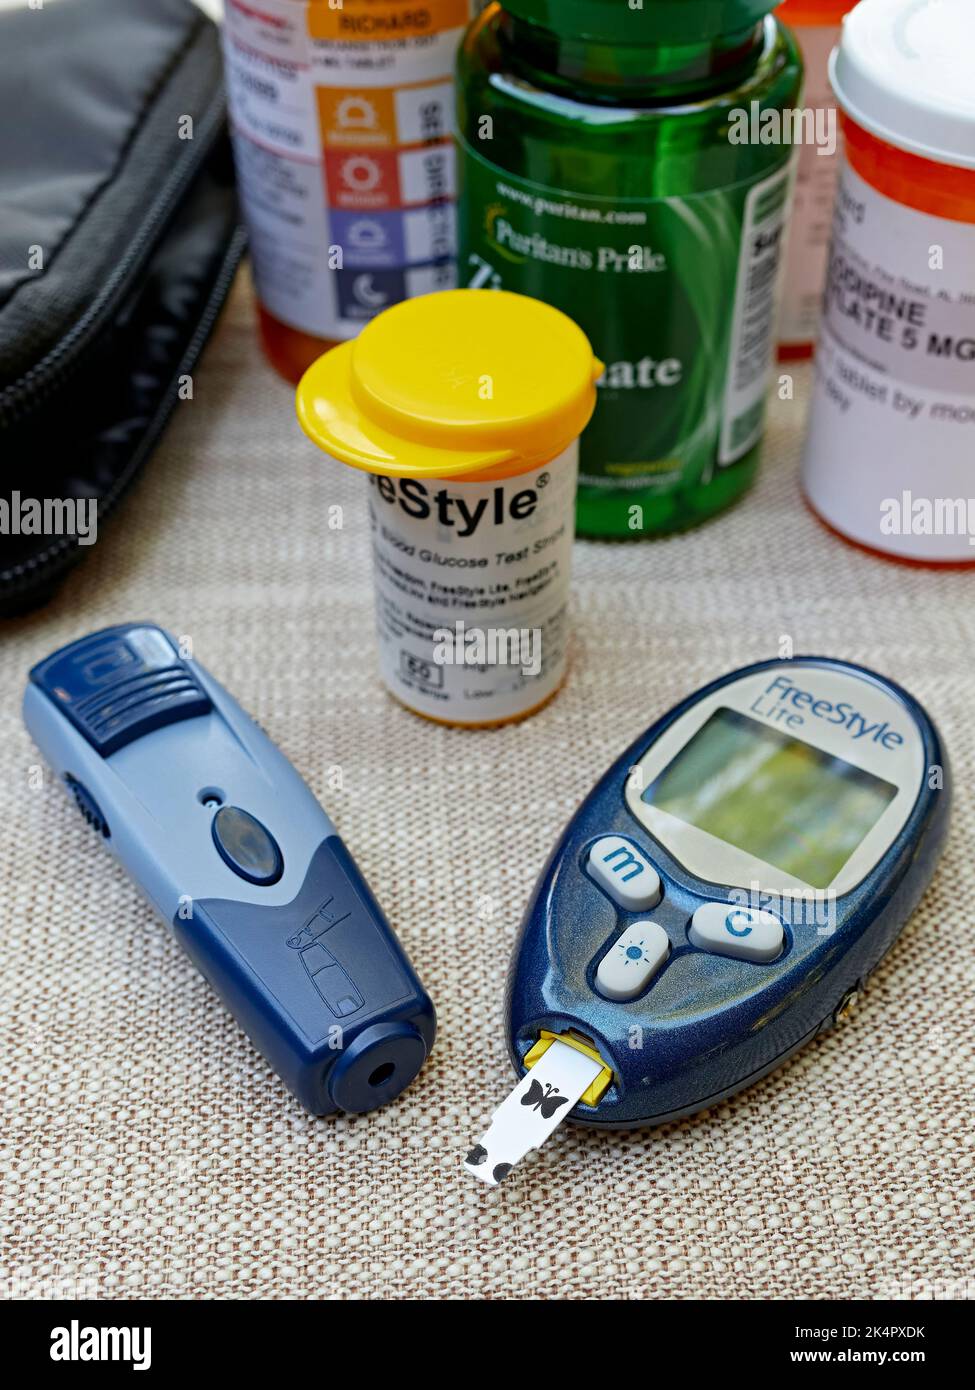 Kit per l'analisi della glicemia o della glicemia, inclusi i test trip e il dispositivo di monitoraggio utilizzato per rilevare il diabete. Foto Stock